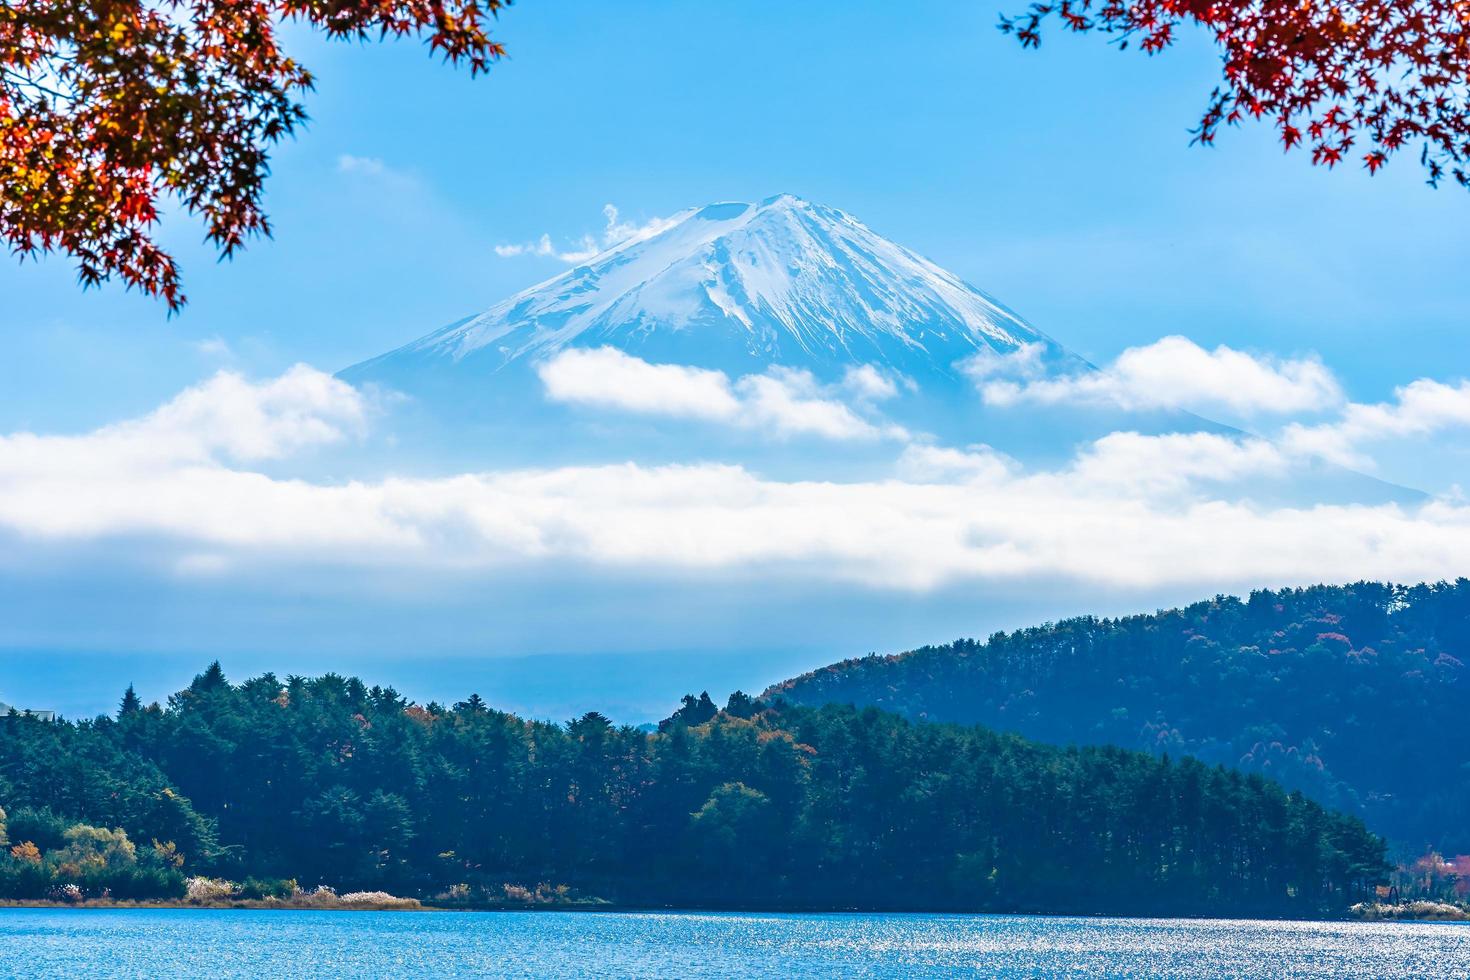 paysage autour du mt. Fuji au Japon en automne photo